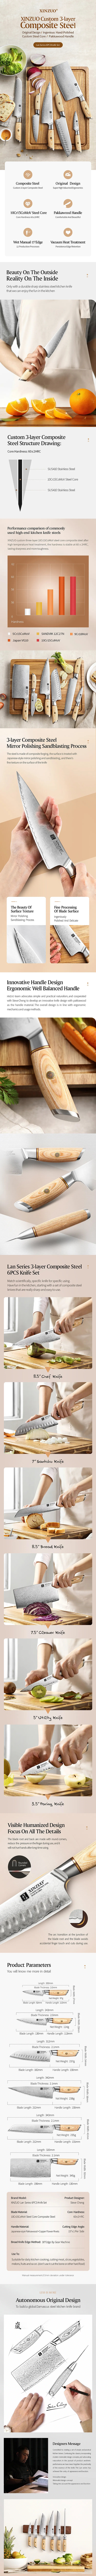 6Pcs Knife Set